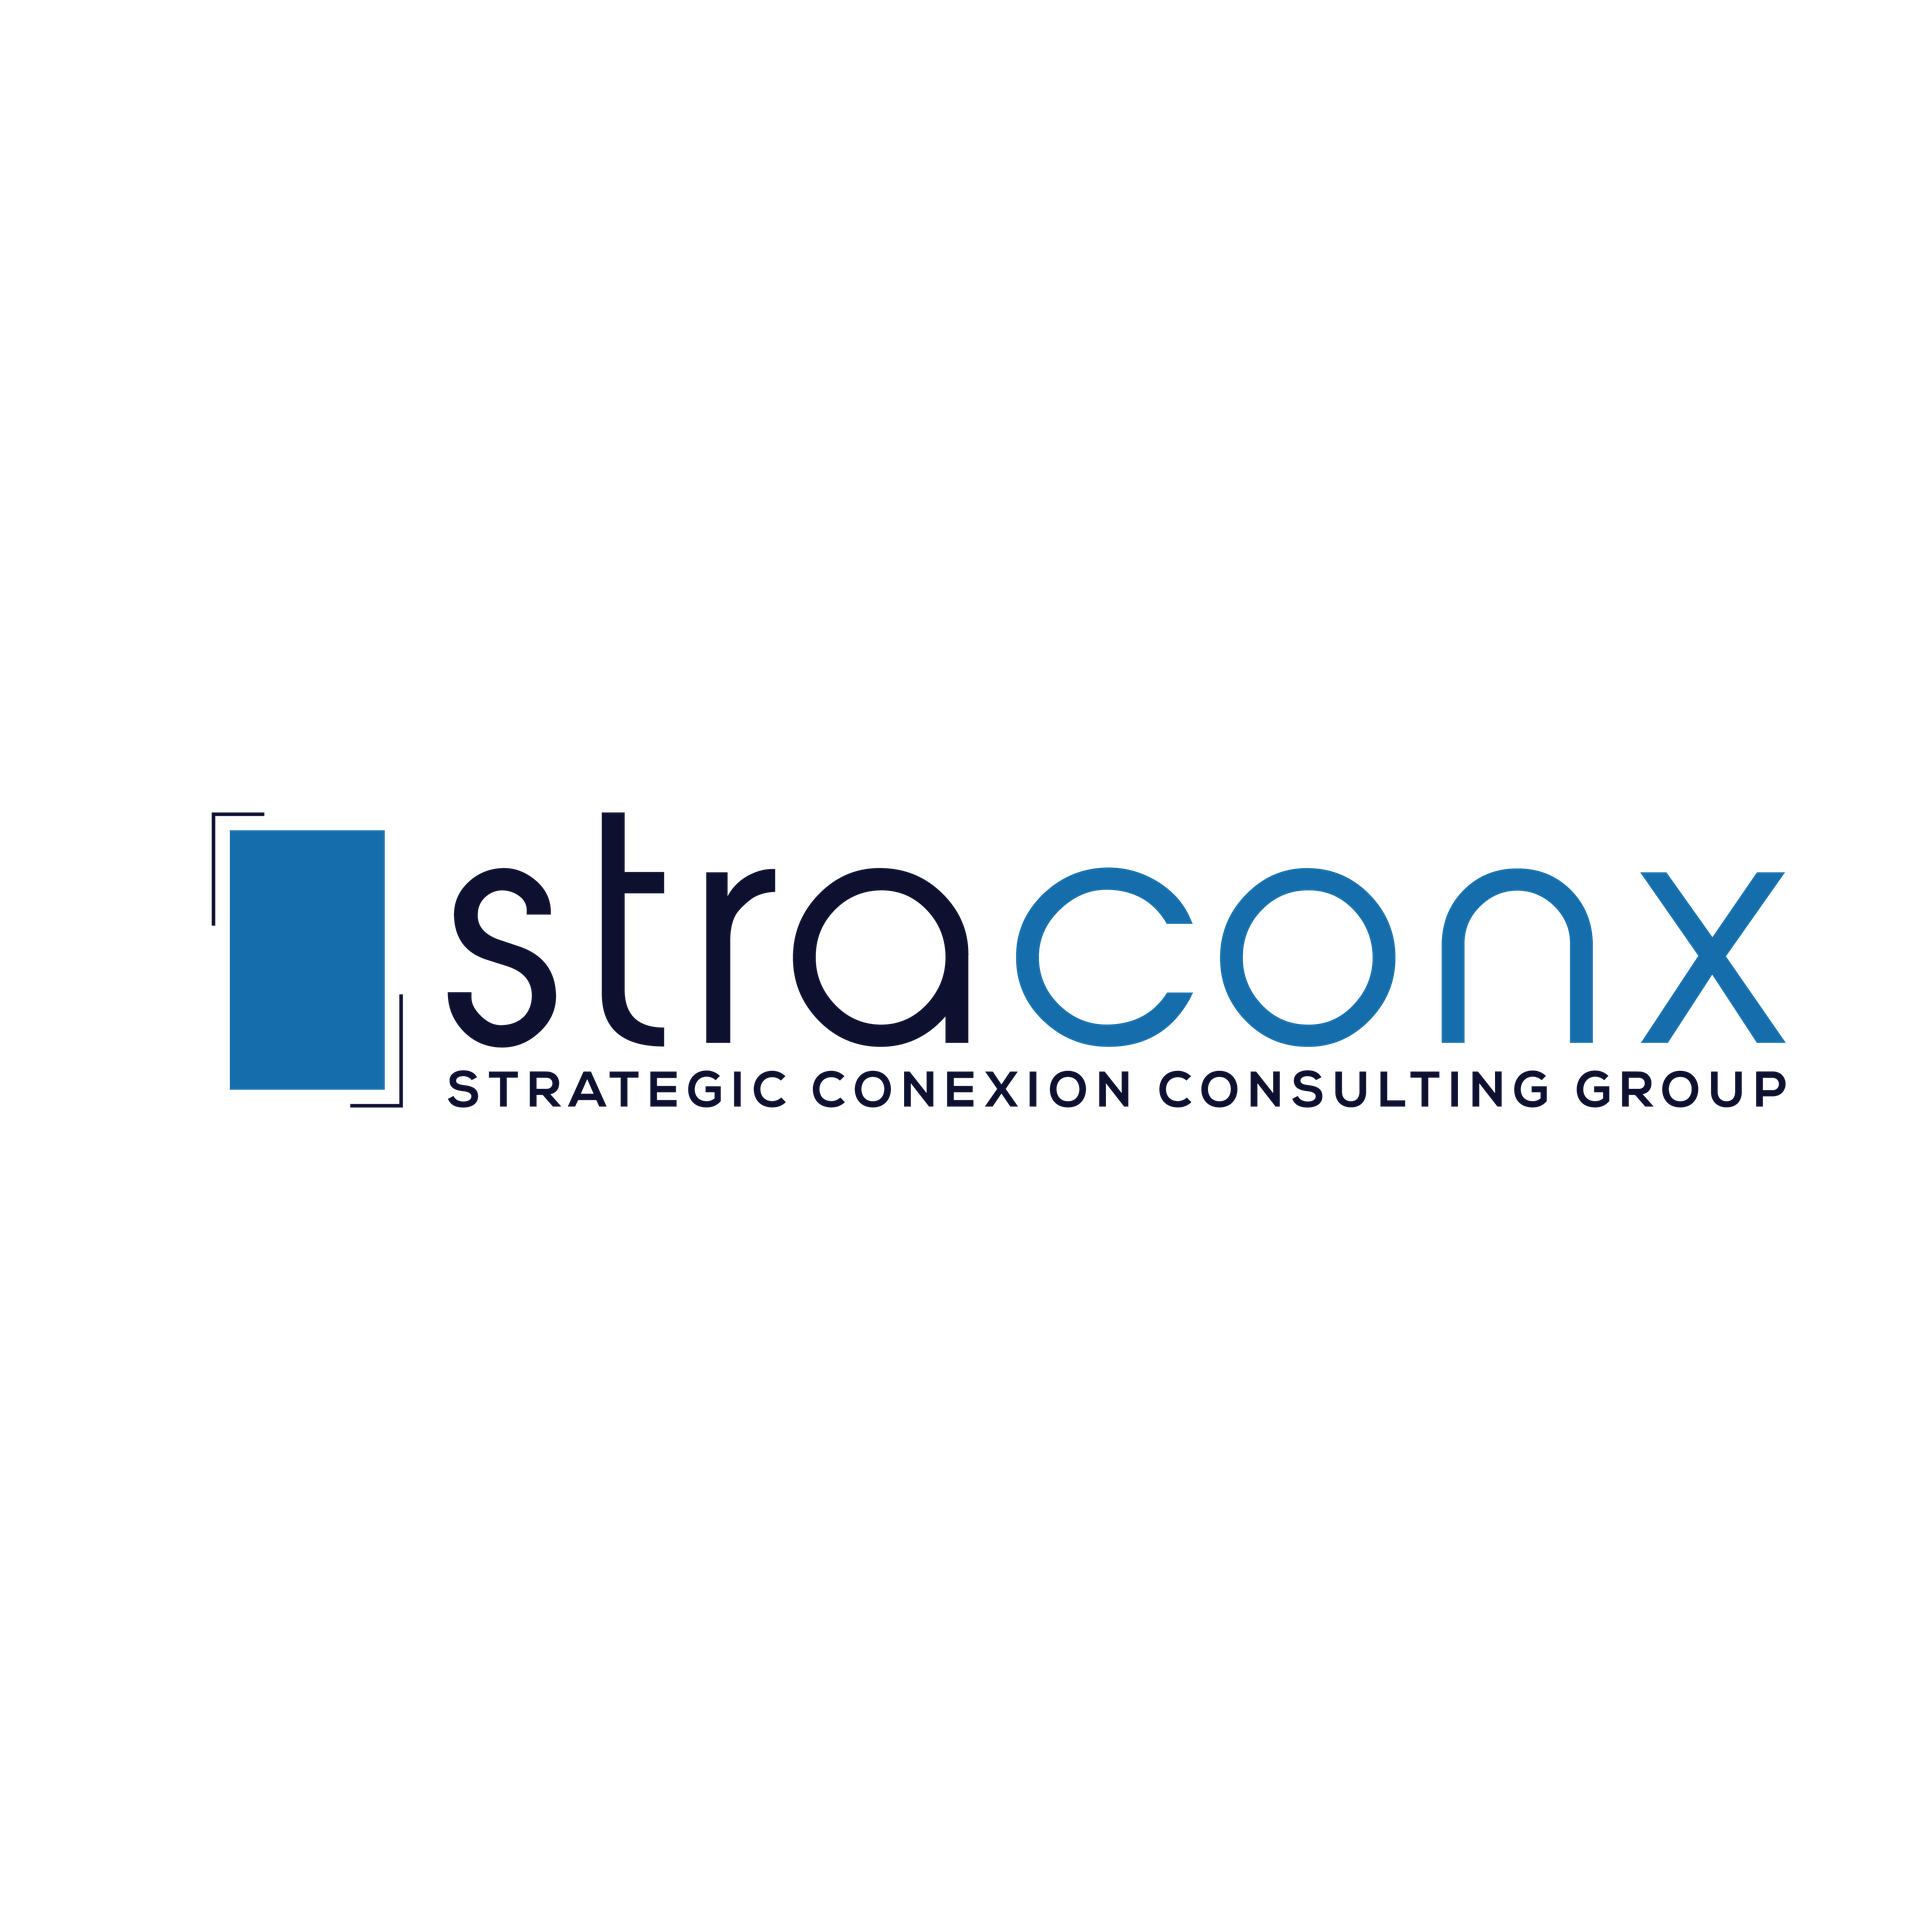 STRATEGIC CONEXION STRACONX S.A.